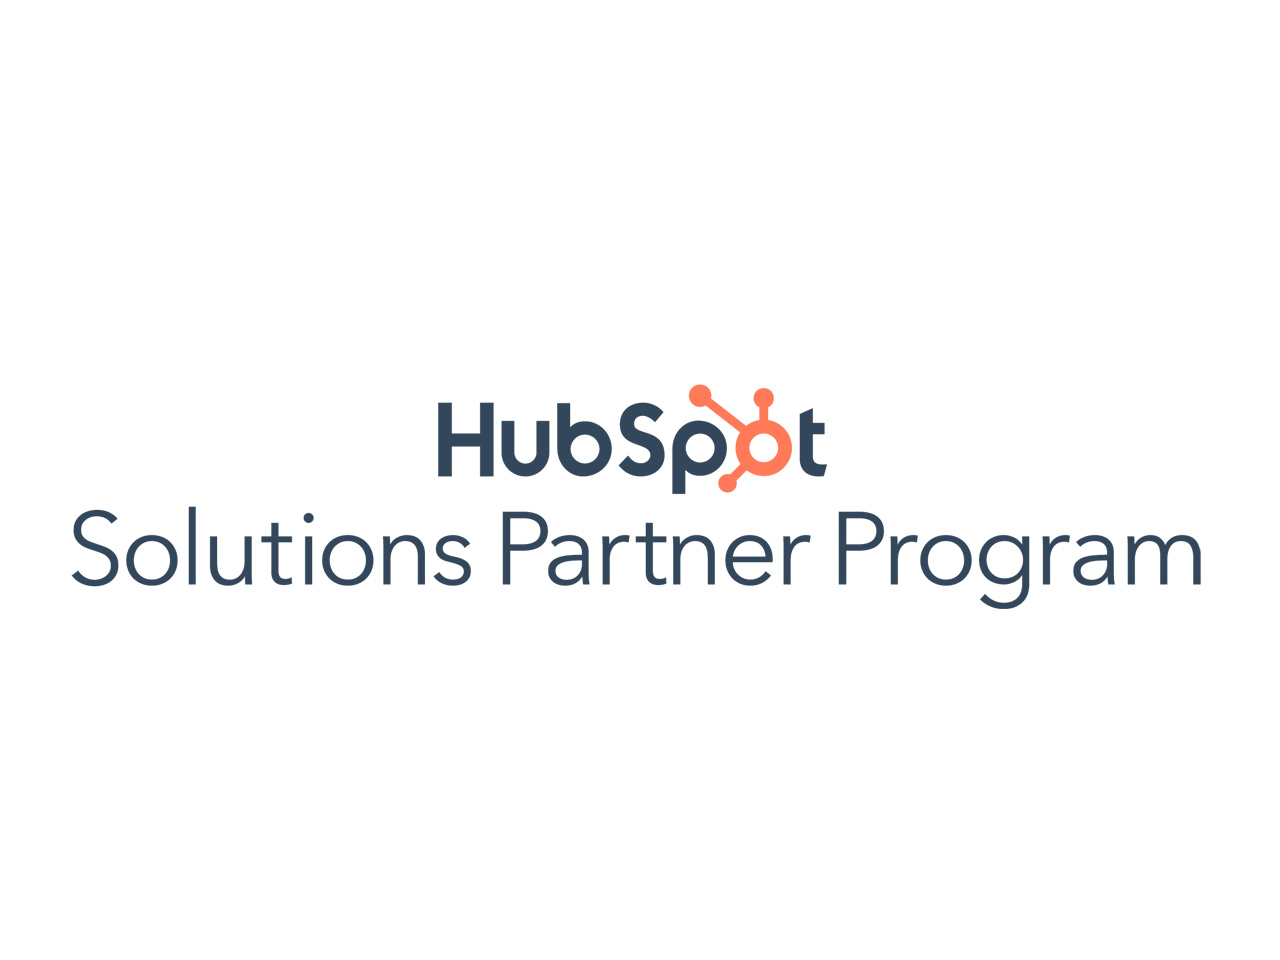 同社は、マーケットシェア世界No.1のインバウンドマーケティングツール『HubSpot』の導入支援を軸に、Webマーケティング領域全般の高度な専門性を駆使して、福岡・九州エリアの企業に価値あるマーケティング戦略を提供する企業だ。